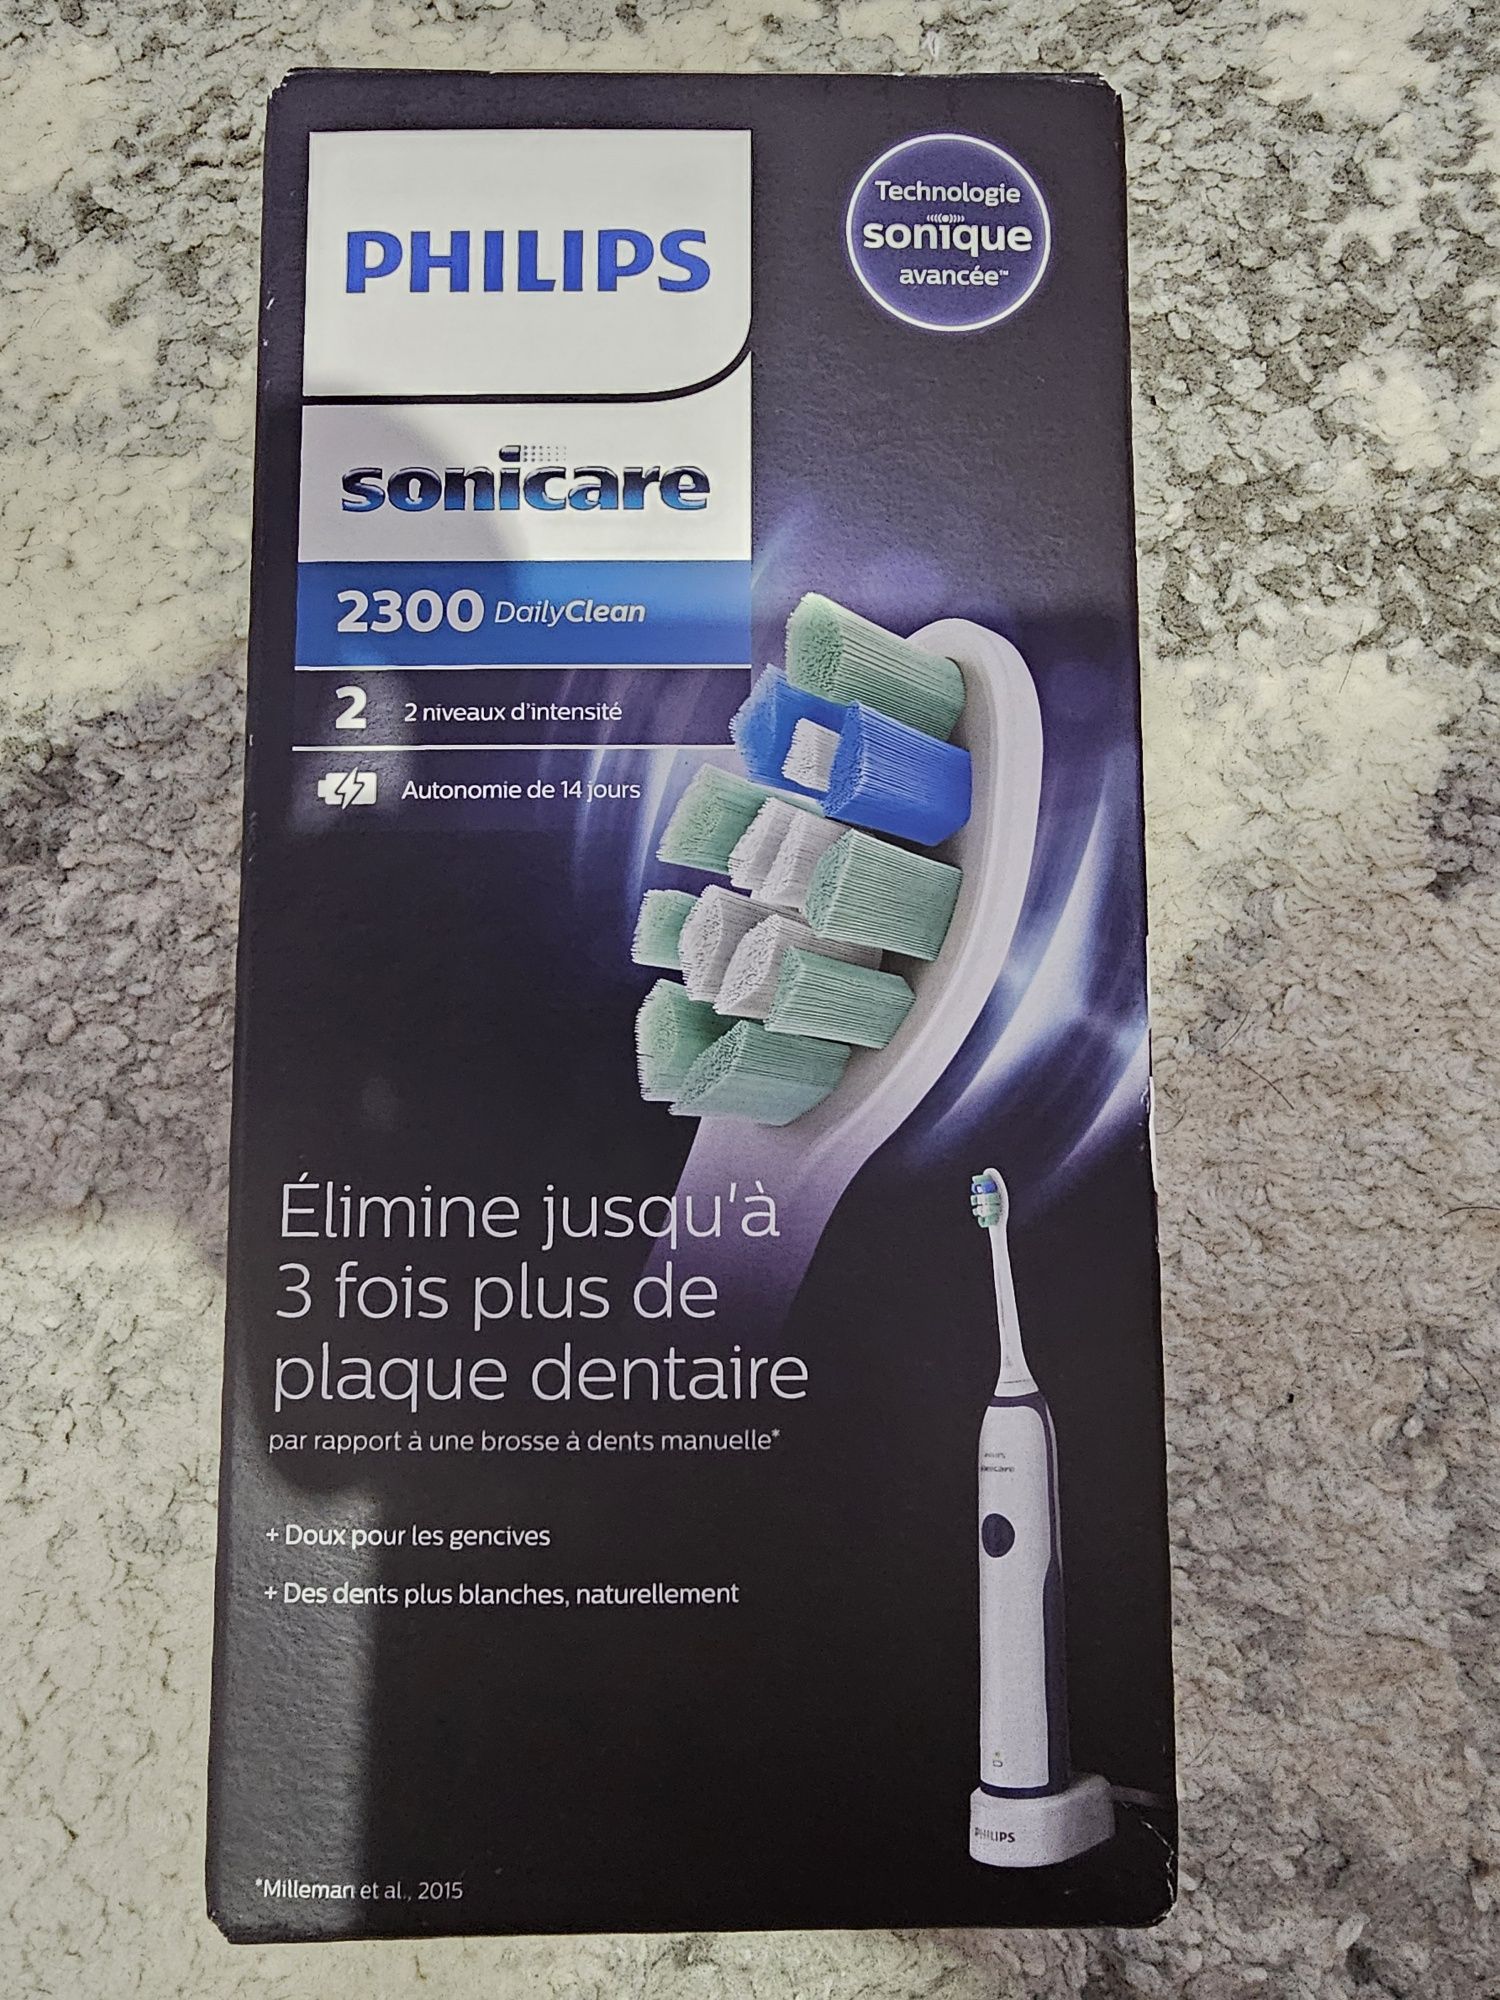 Vând periuta de dinti Philips